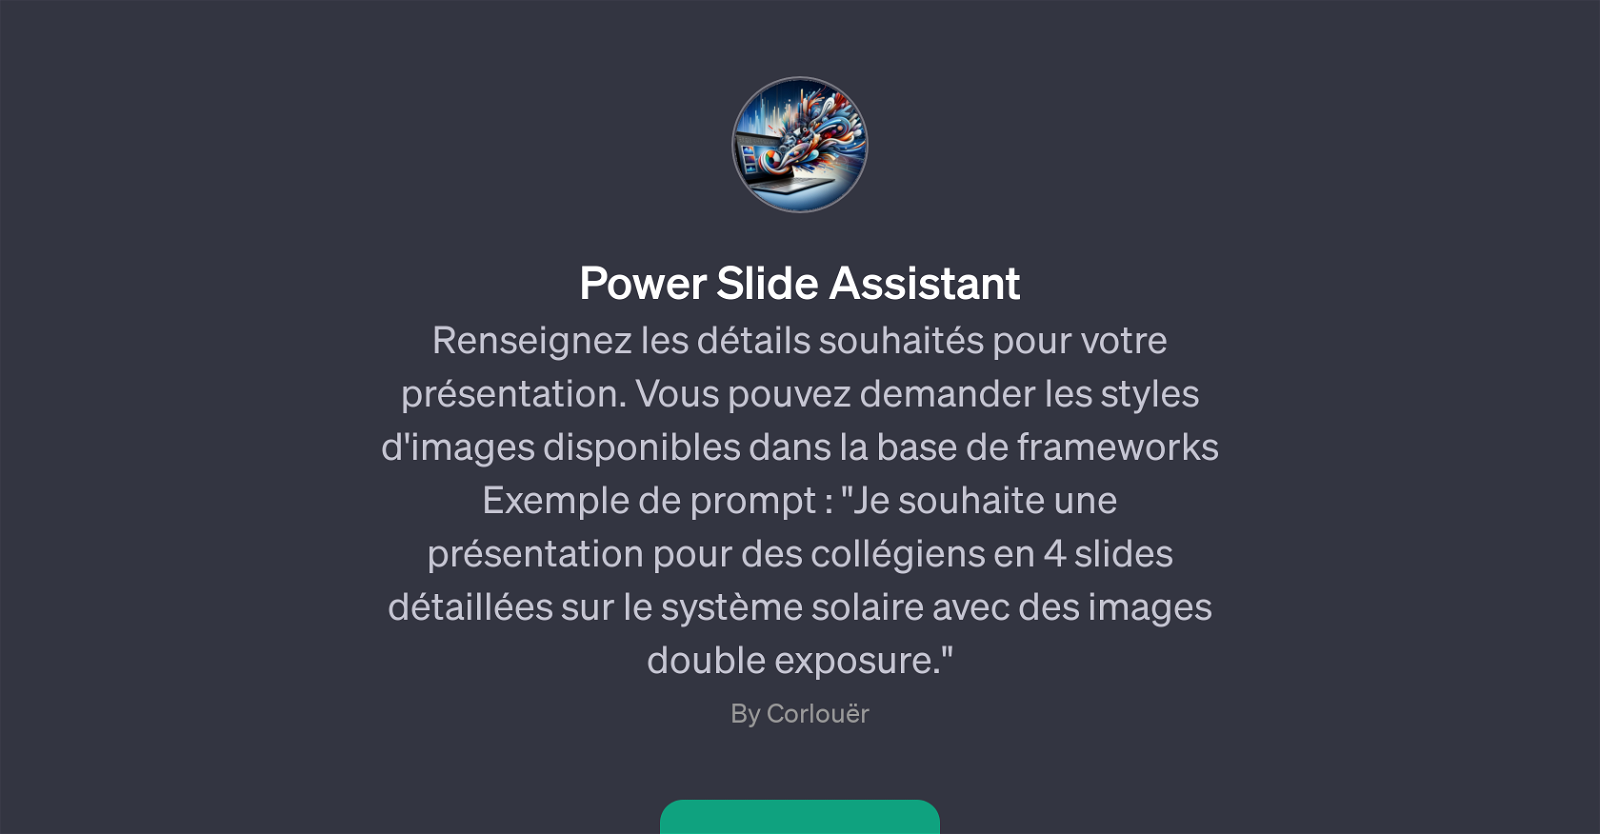 Power Slide Assistant website